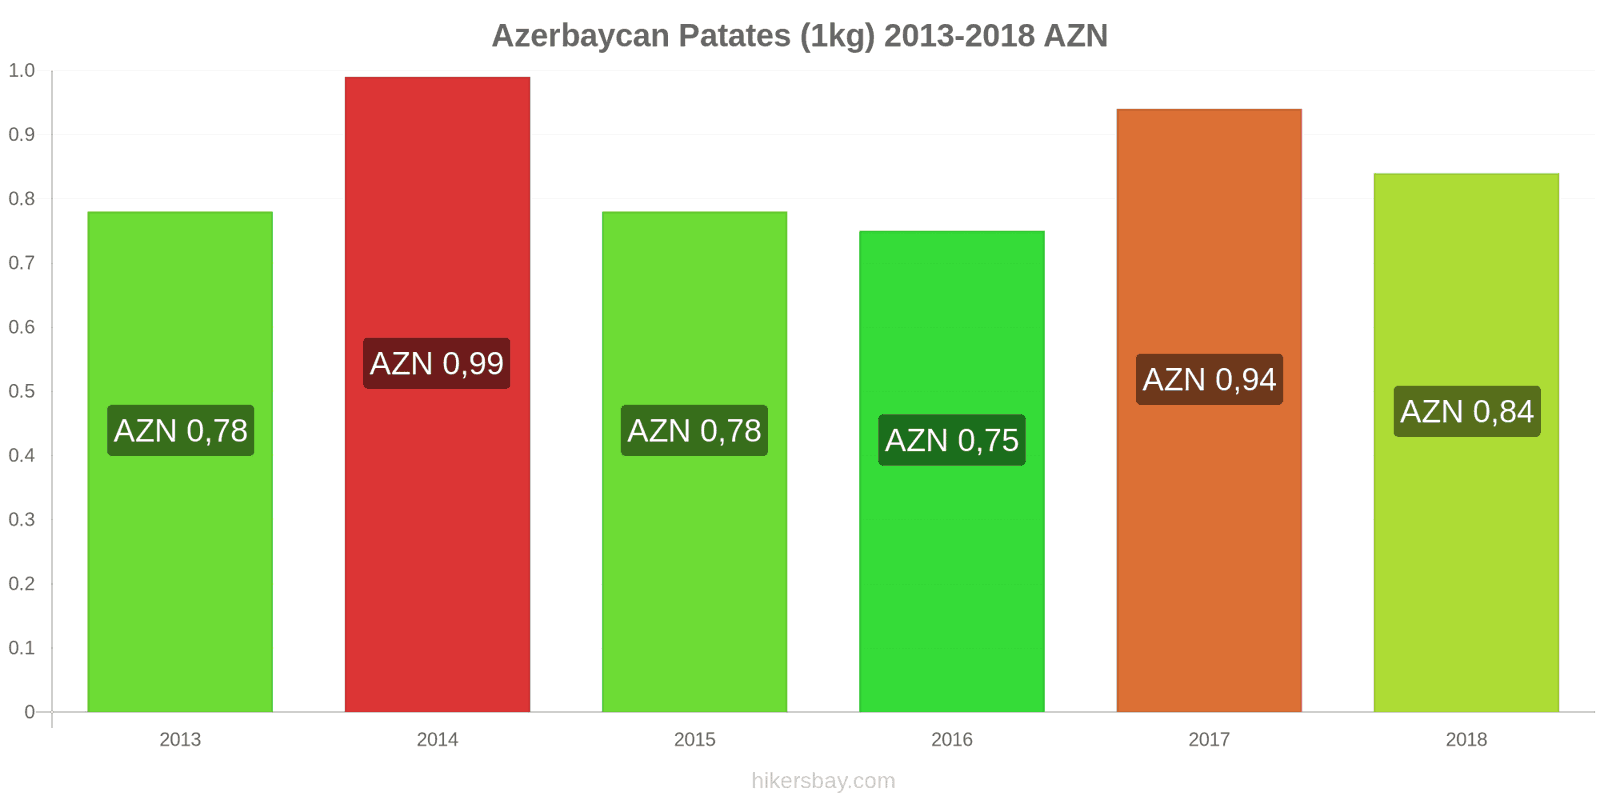 Azerbaycan fiyat değişiklikleri Patates (1kg) hikersbay.com